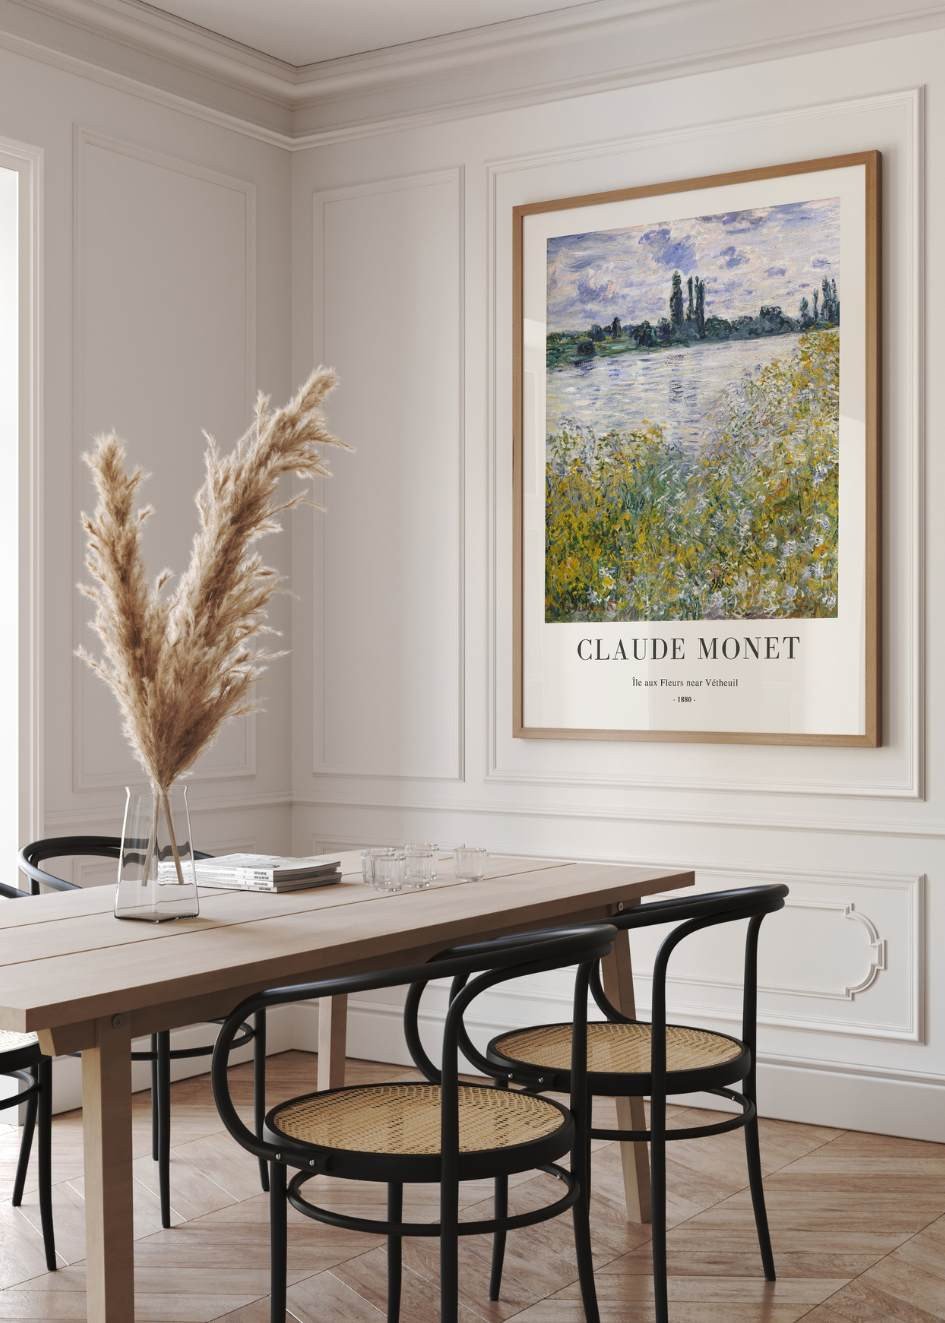 Monet - Île aux Fleurs near...